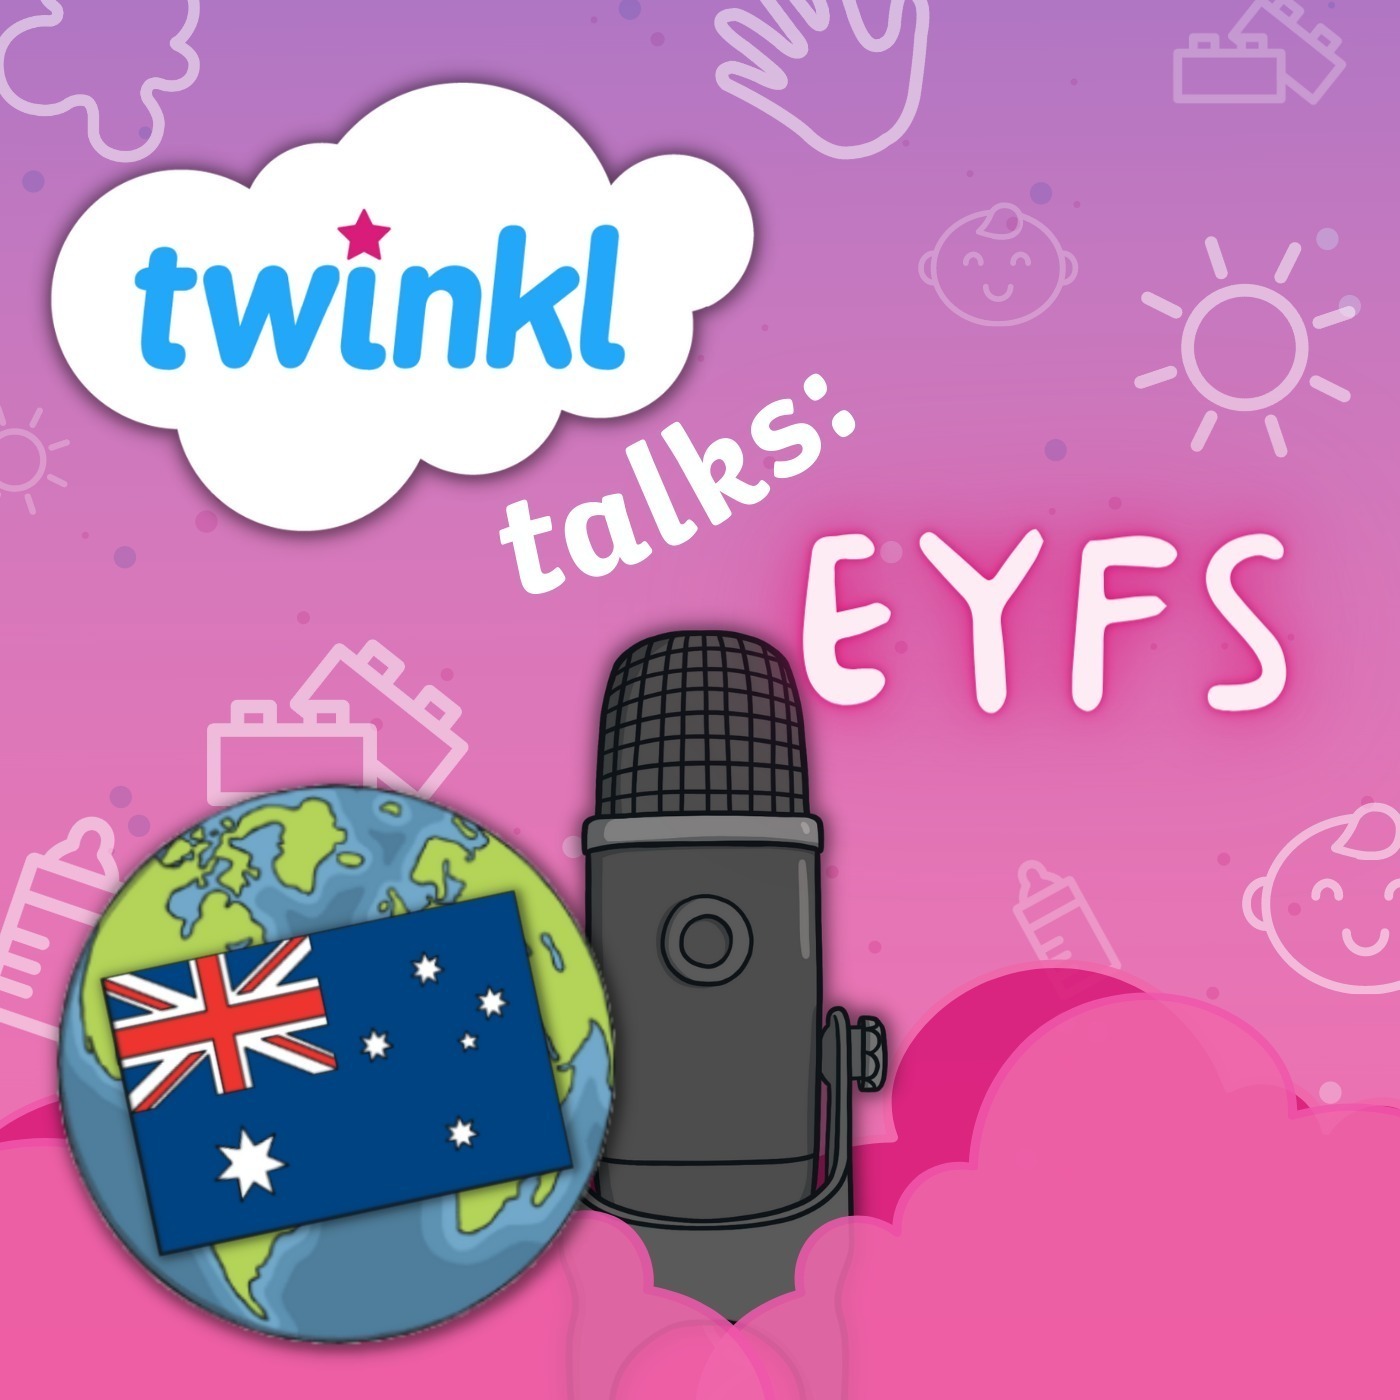 Episode 26: EYFS Around The World - Australia!